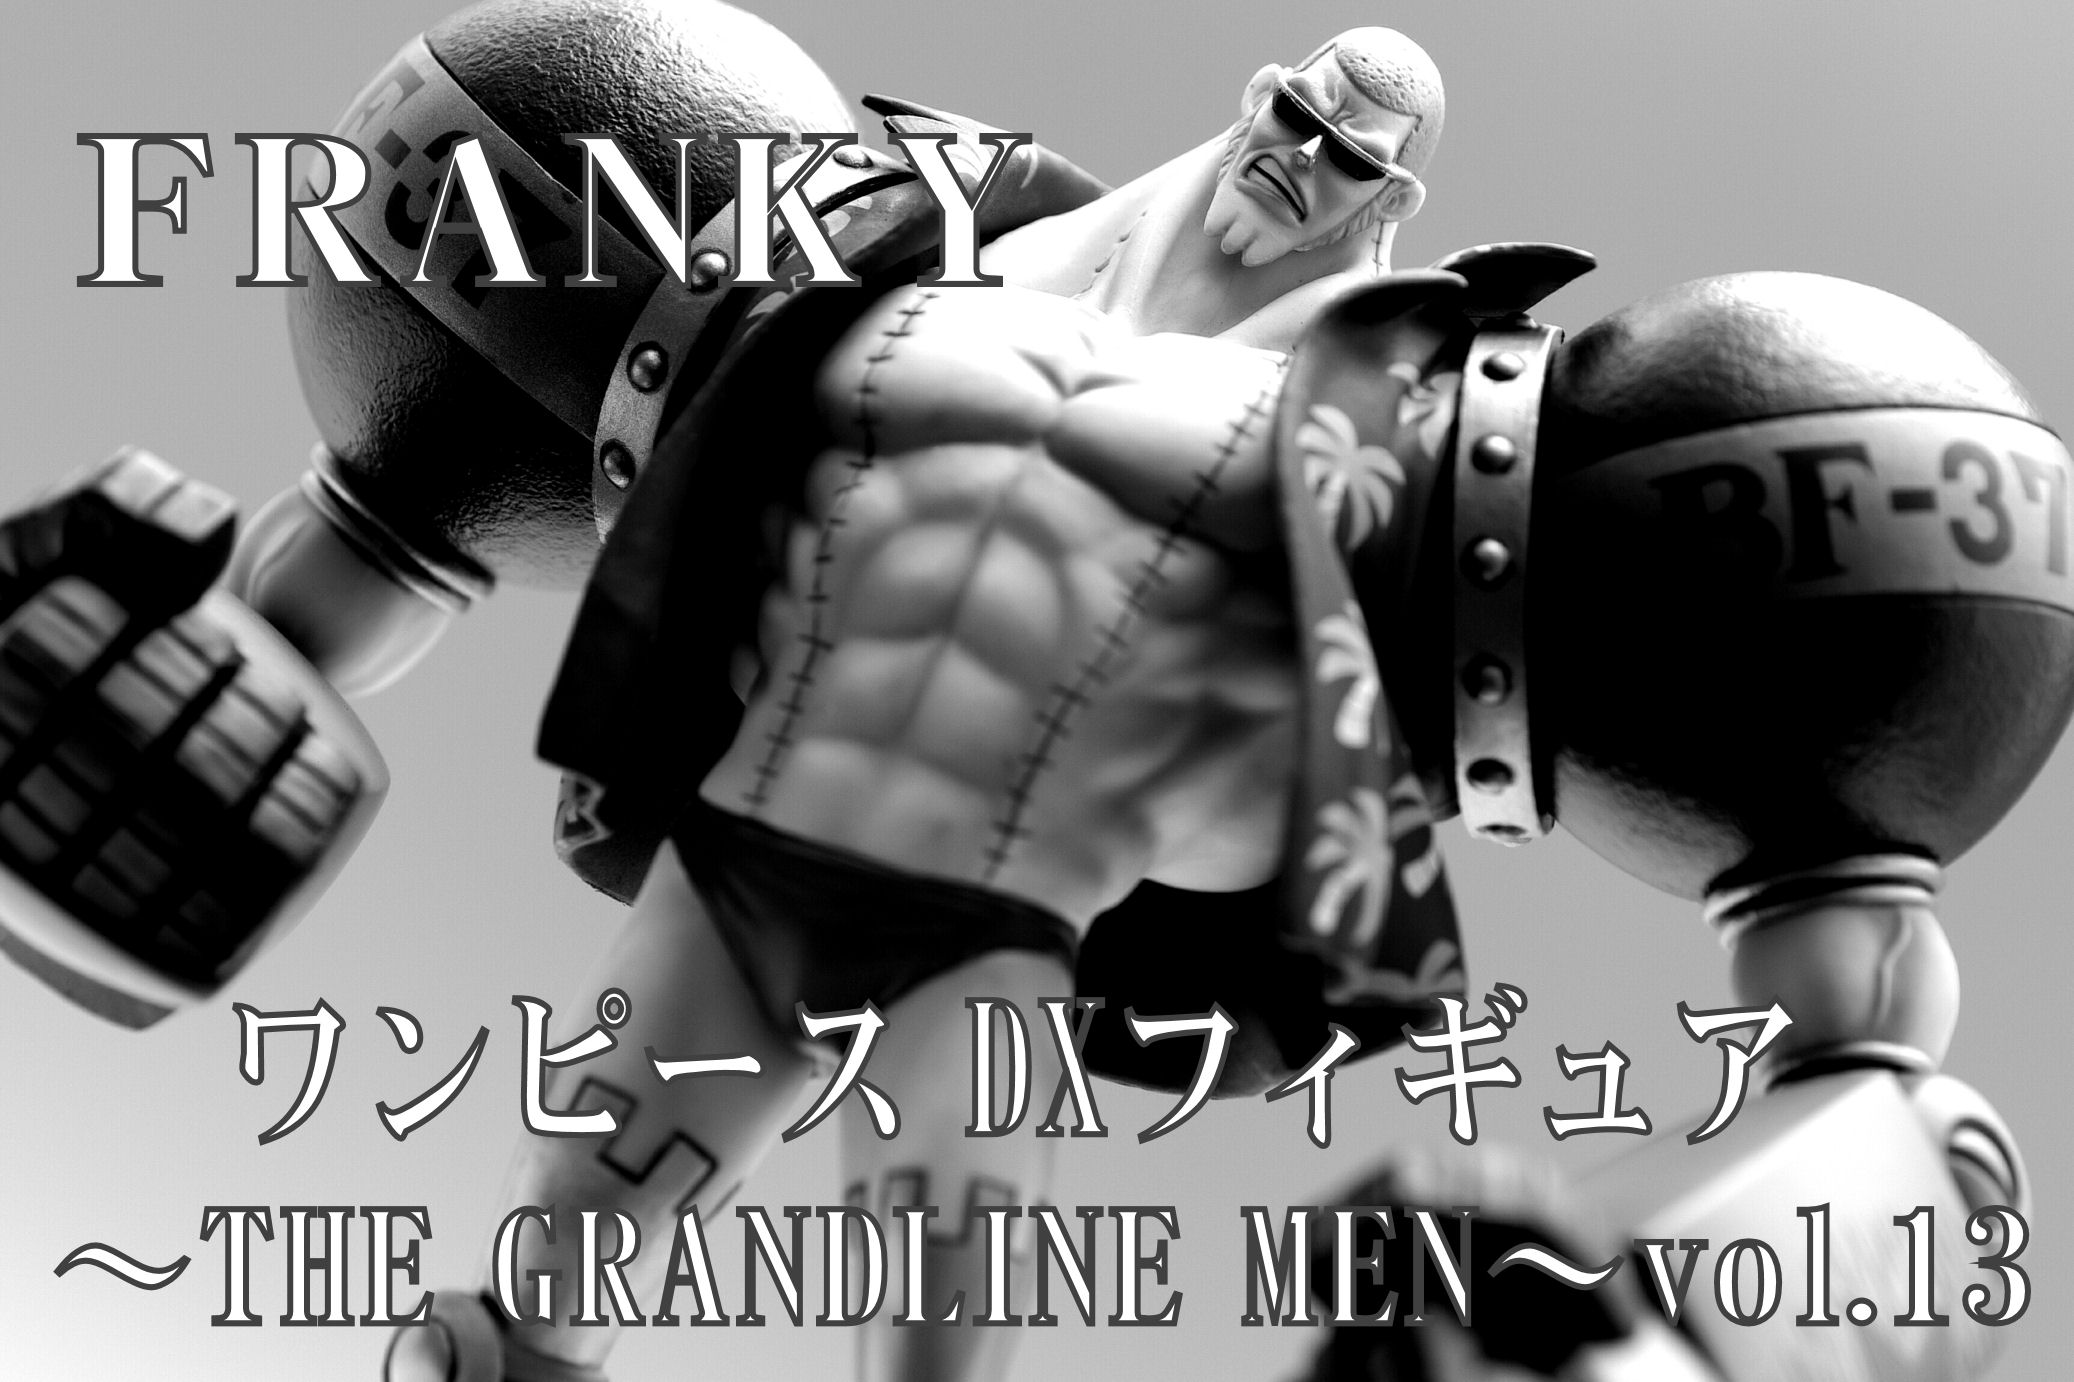 ワンピース DXフィギュア グランドラインメン vol.13 フランキー